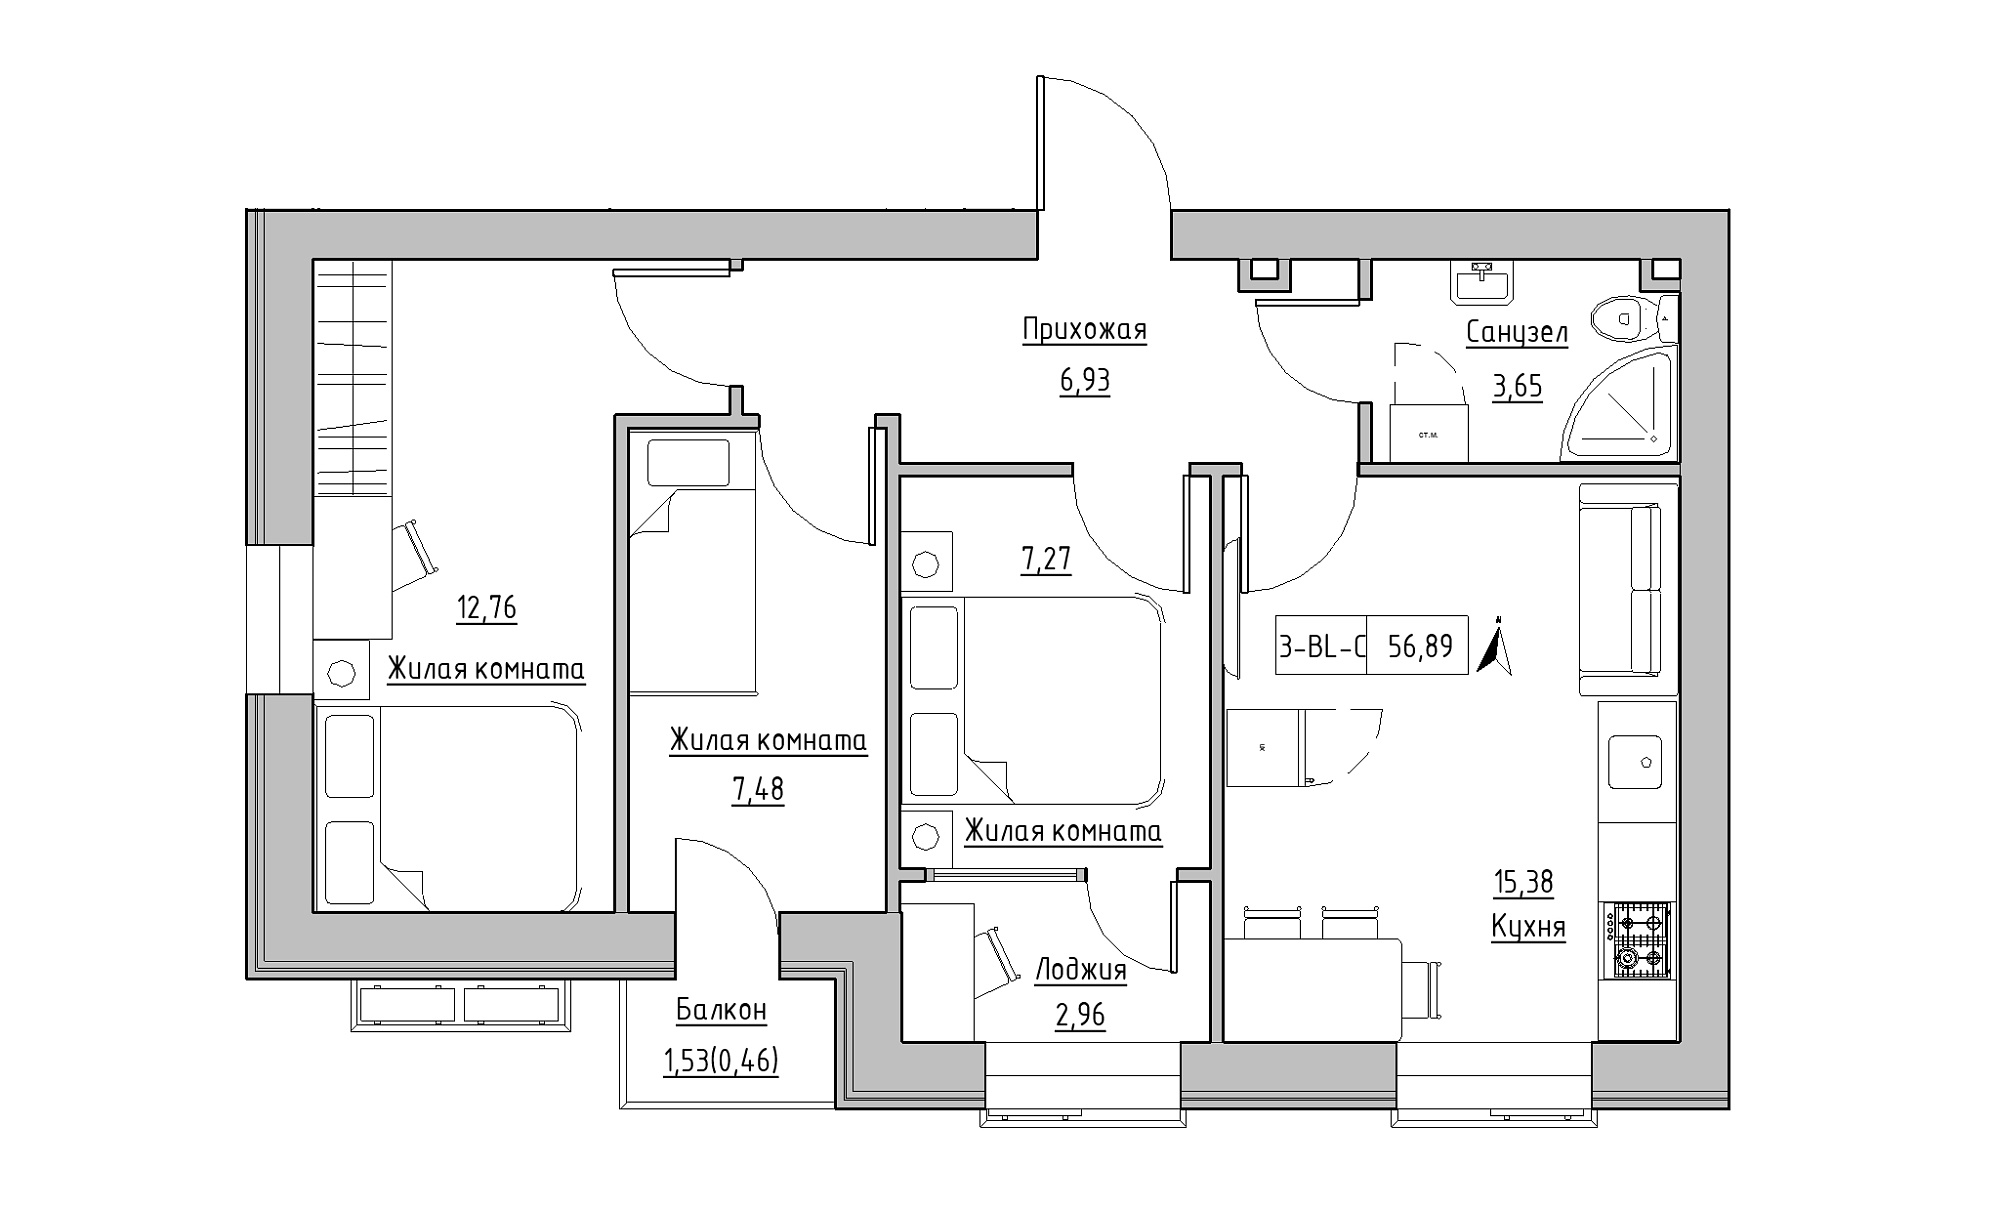 Планування 3-к квартира площею 56.89м2, KS-016-03/0008.